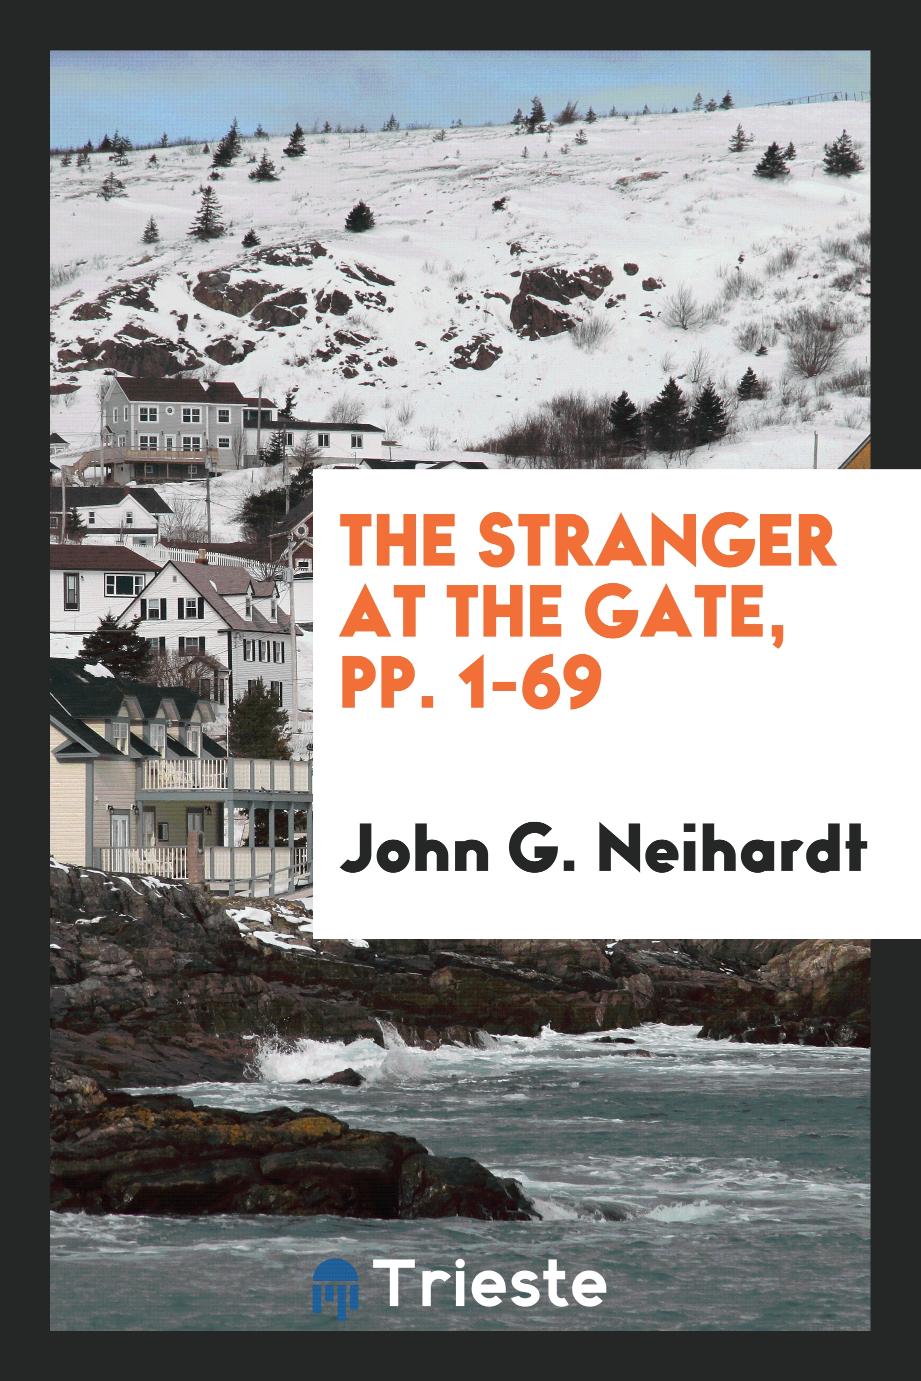 The Stranger at the Gate, pp. 1-69